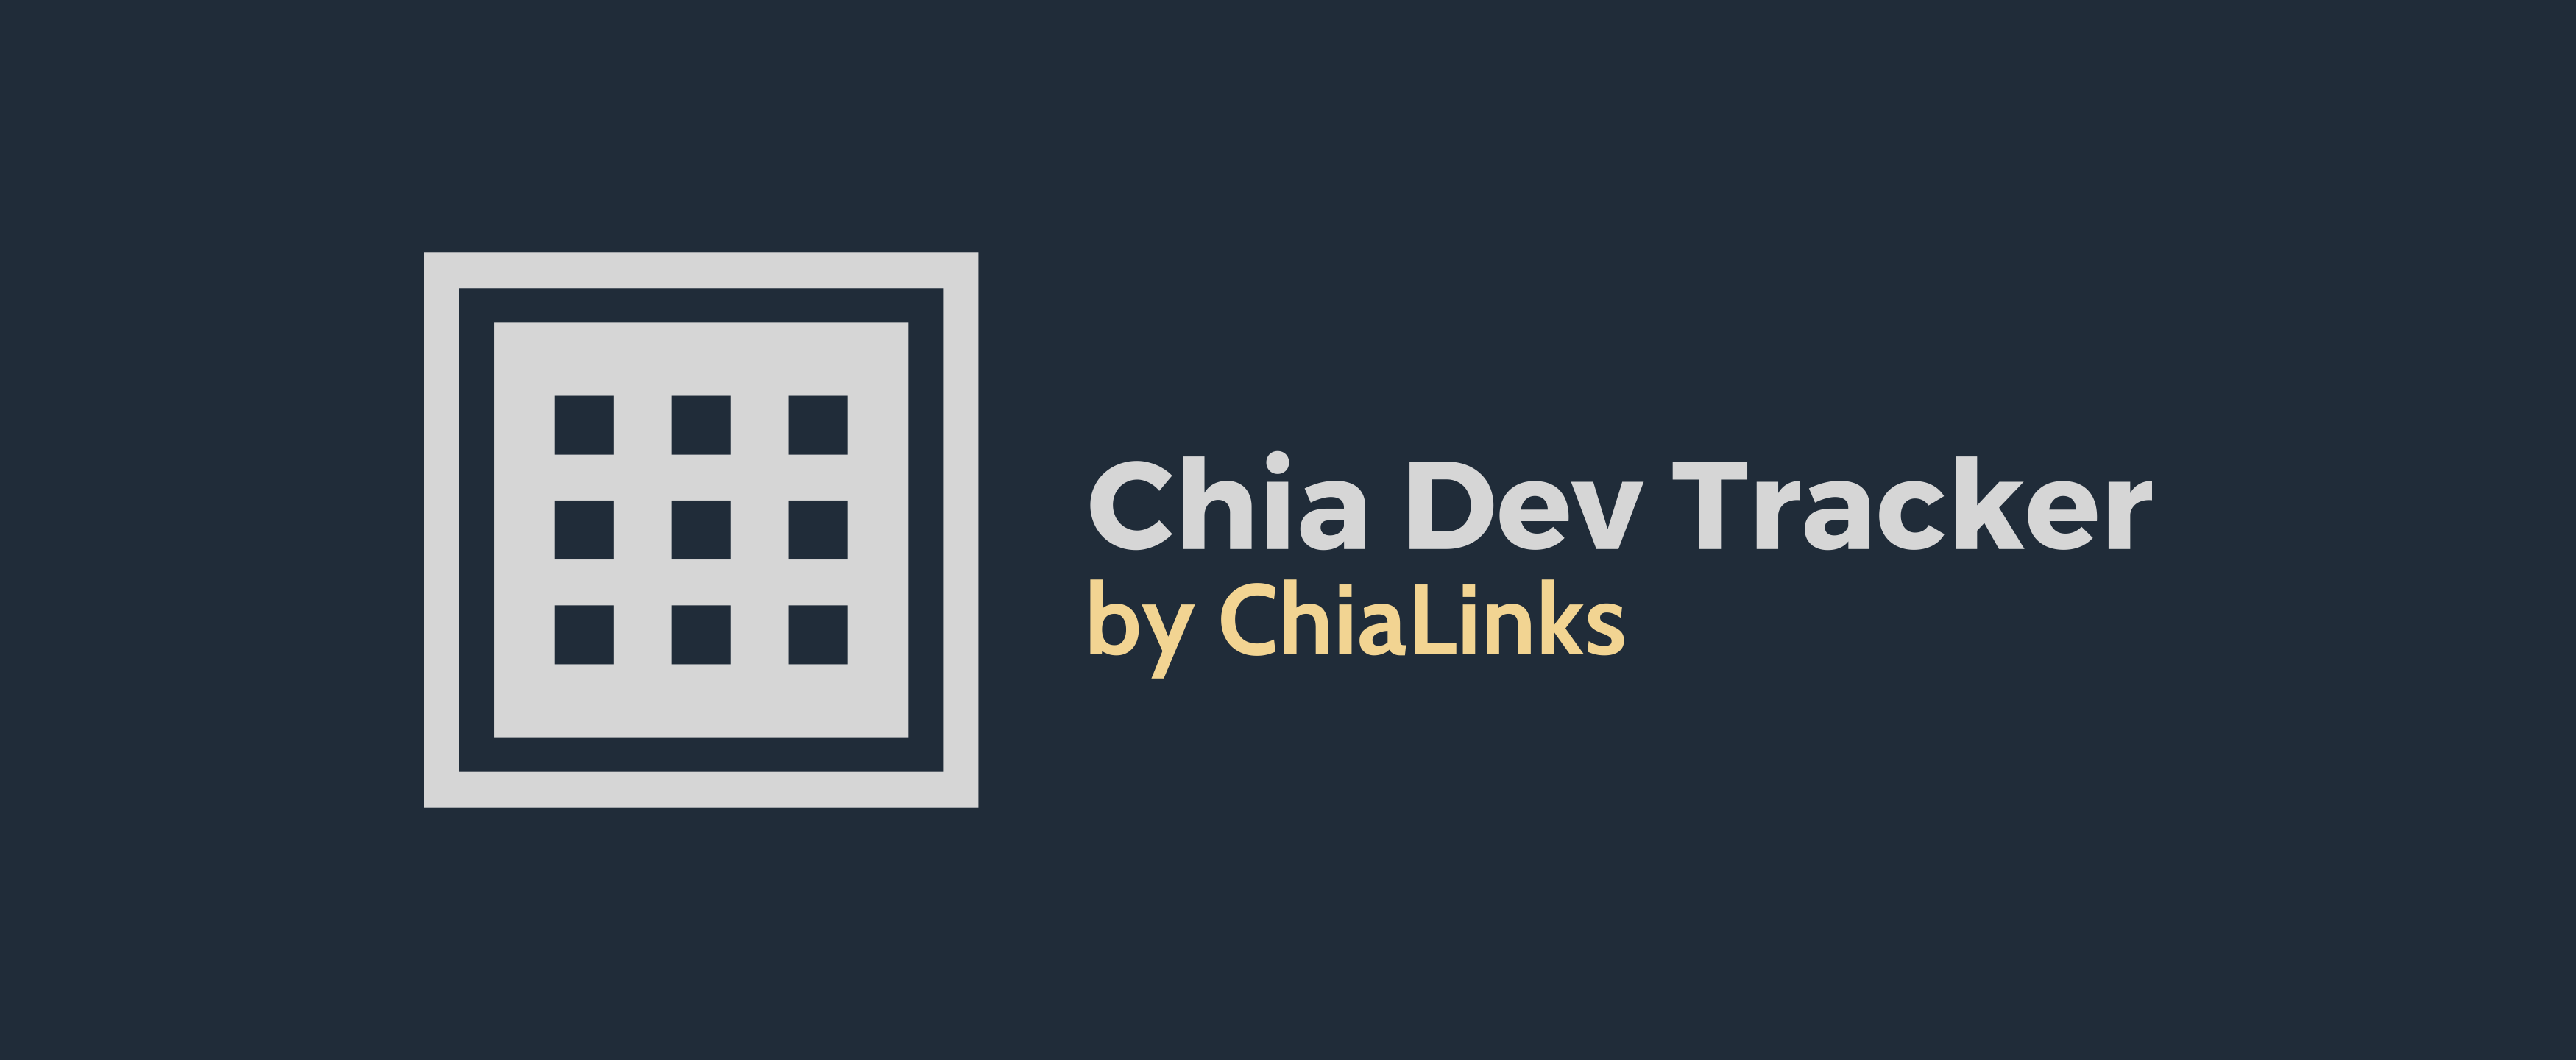 Chia Dev Tracker